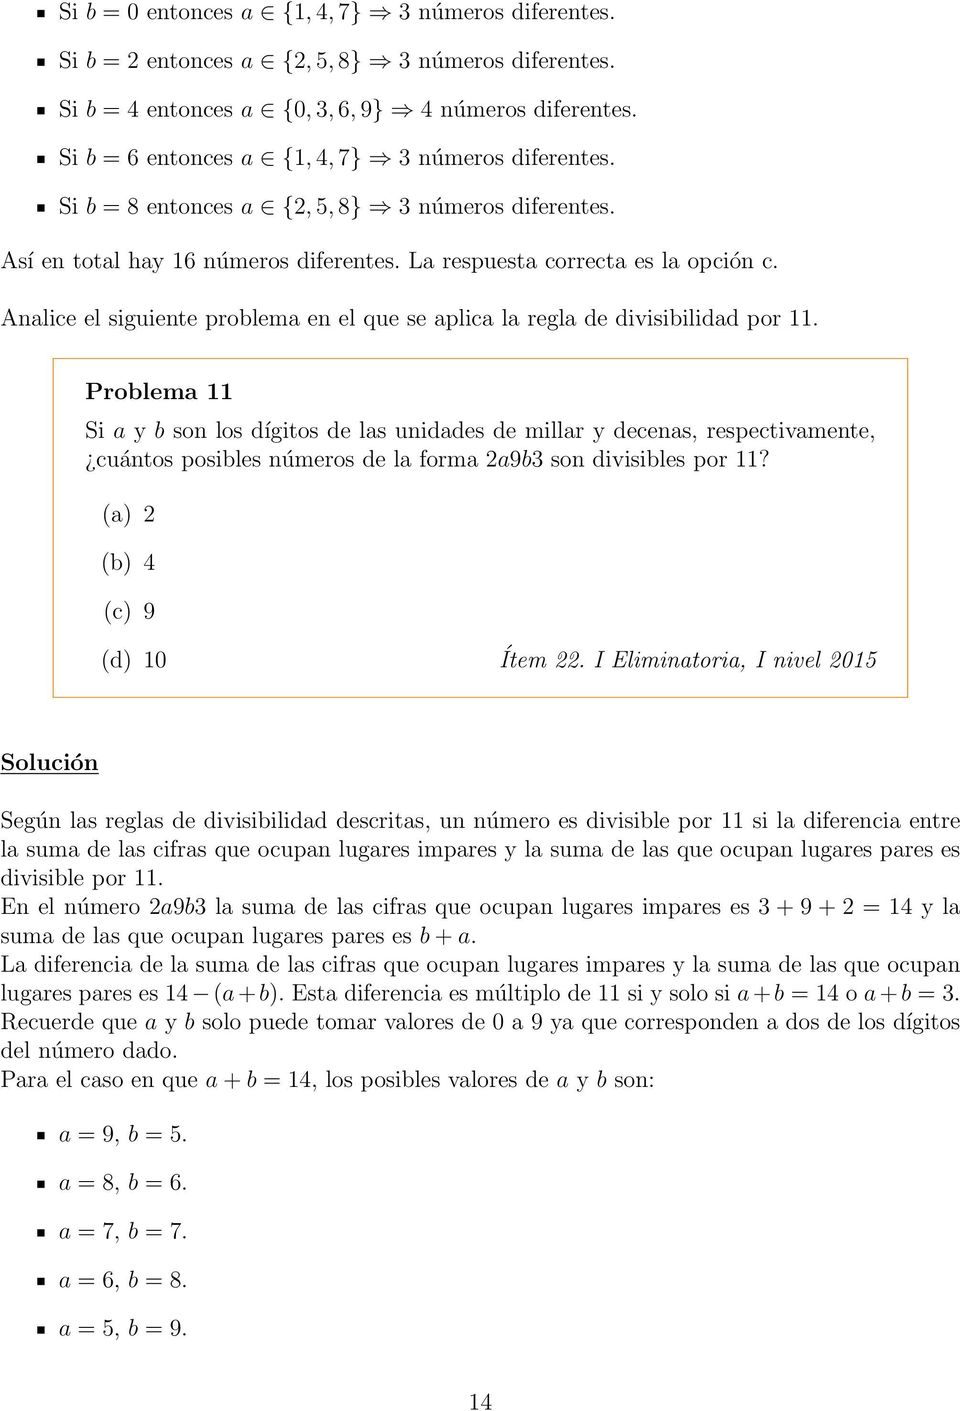 Analice el siguiente problema en el que se aplica la regla de divisibilidad por 11.